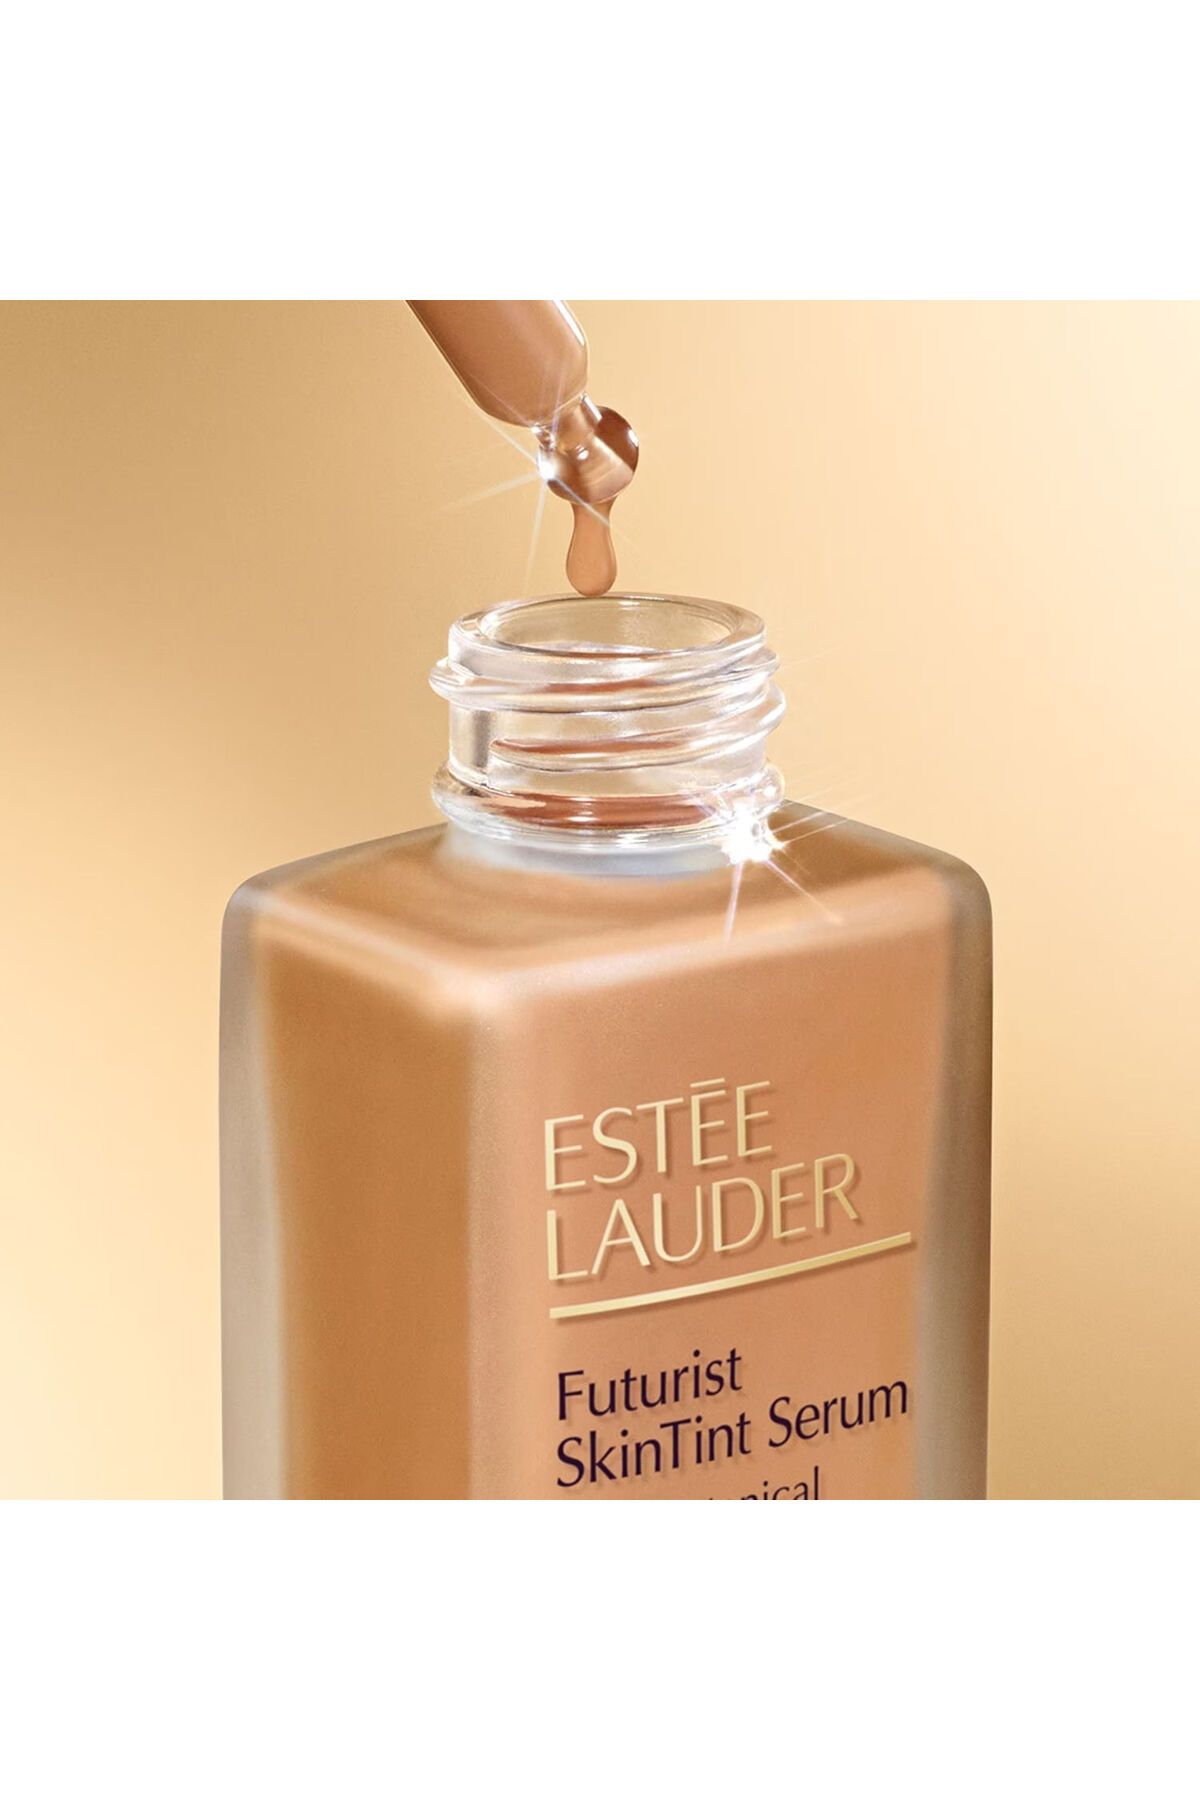 Estee Lauder آرایش پایه سرم مرطوب کننده و تقویت کننده با SPF20 و روغن های گیاهی Futurist Sintint